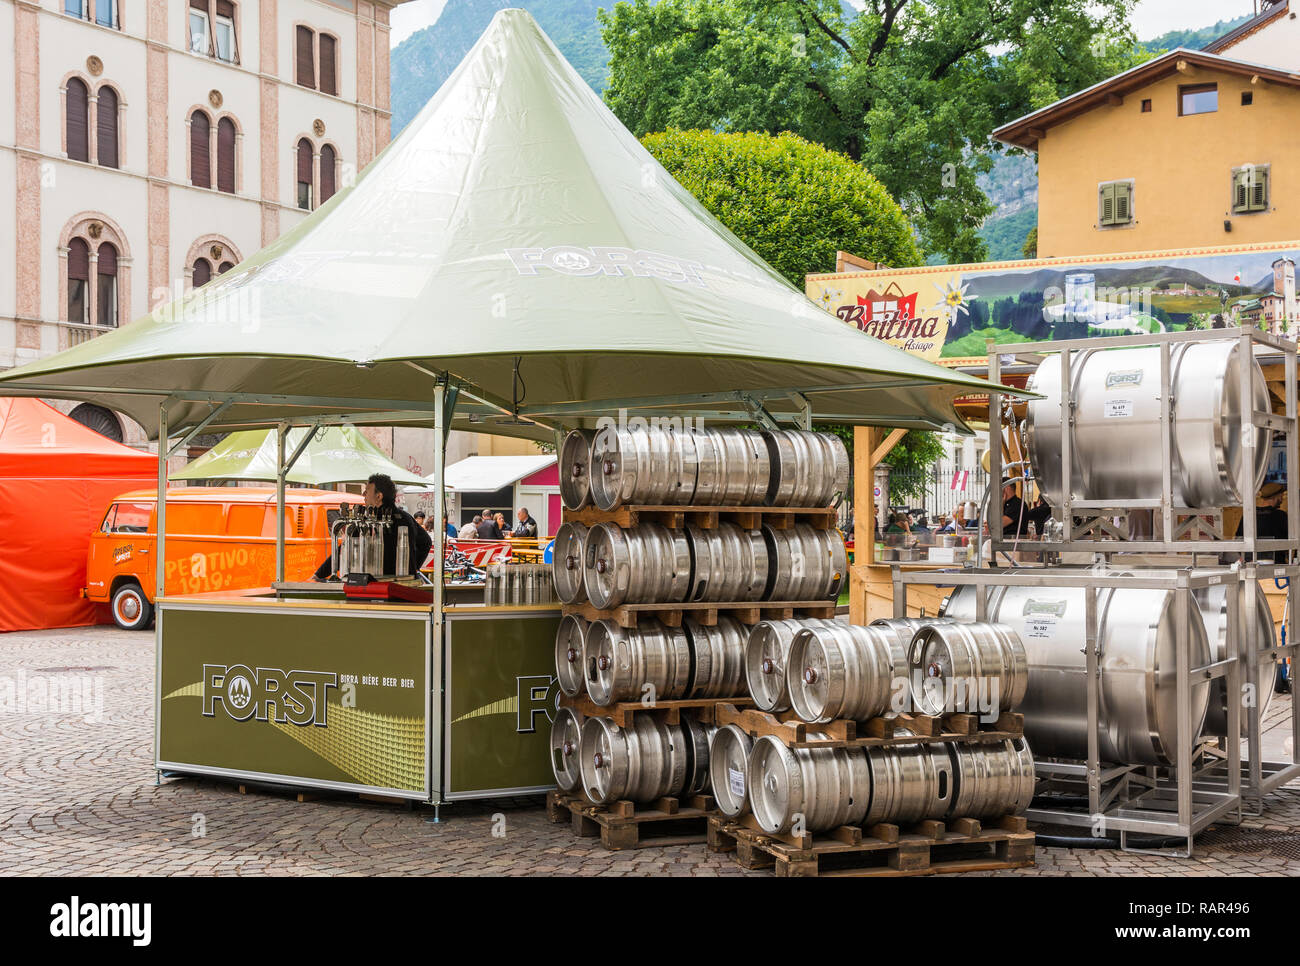 FORST stand de bières dans le carré de Trento, Italie, Italie du nord, en Europe Banque D'Images